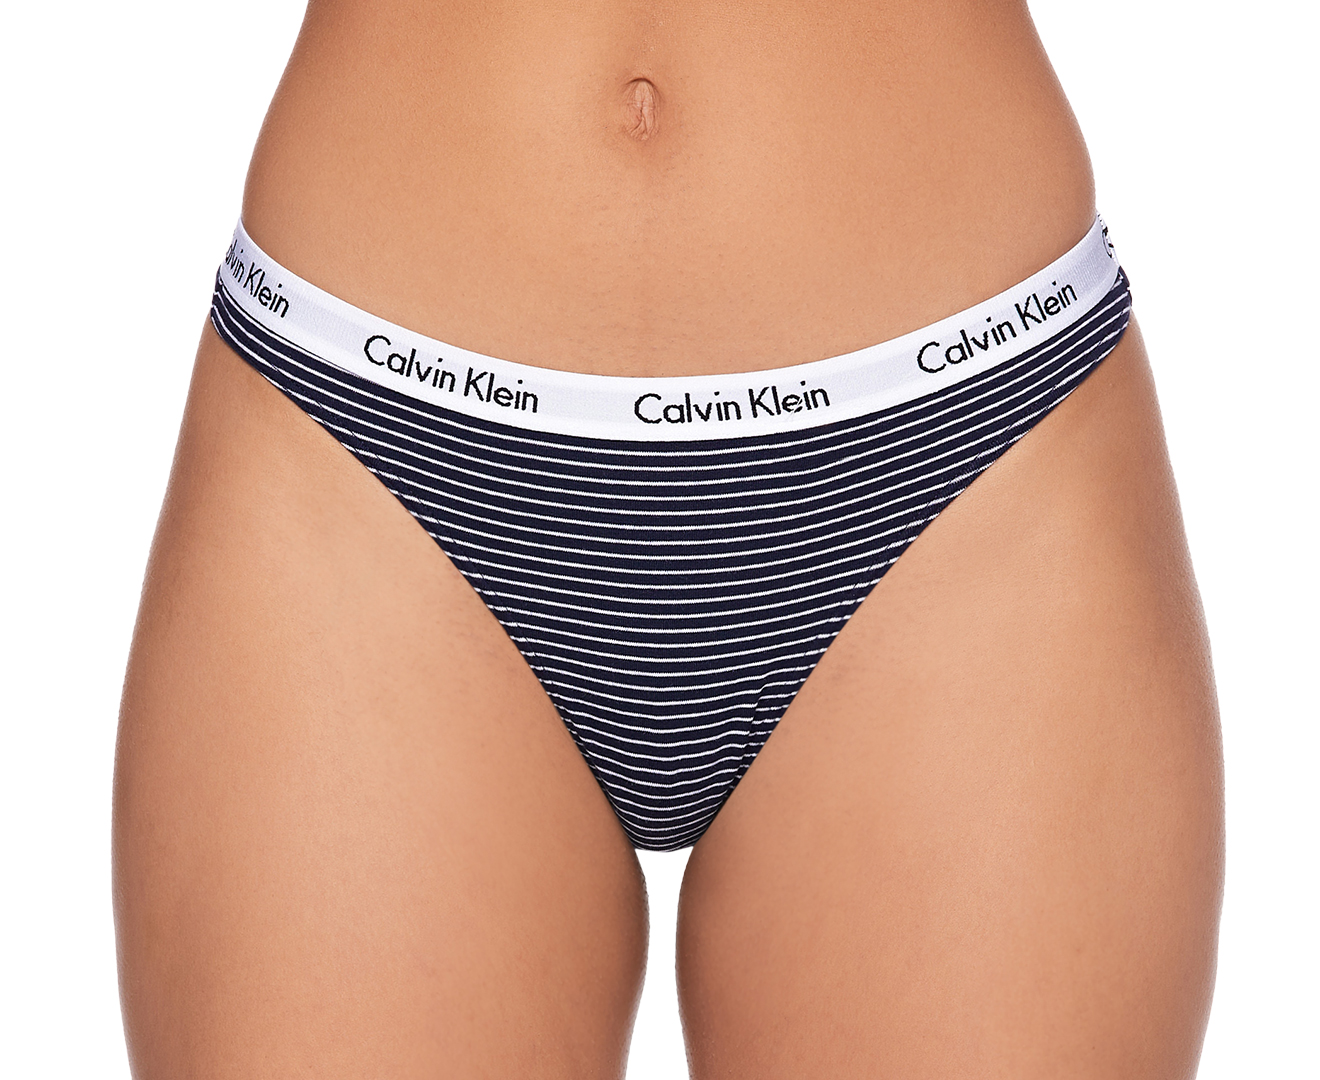 Calvin Klein Women's Carousel Thongs / Strings 3-Pack - Shoreline/Palest  Blue/Stripe